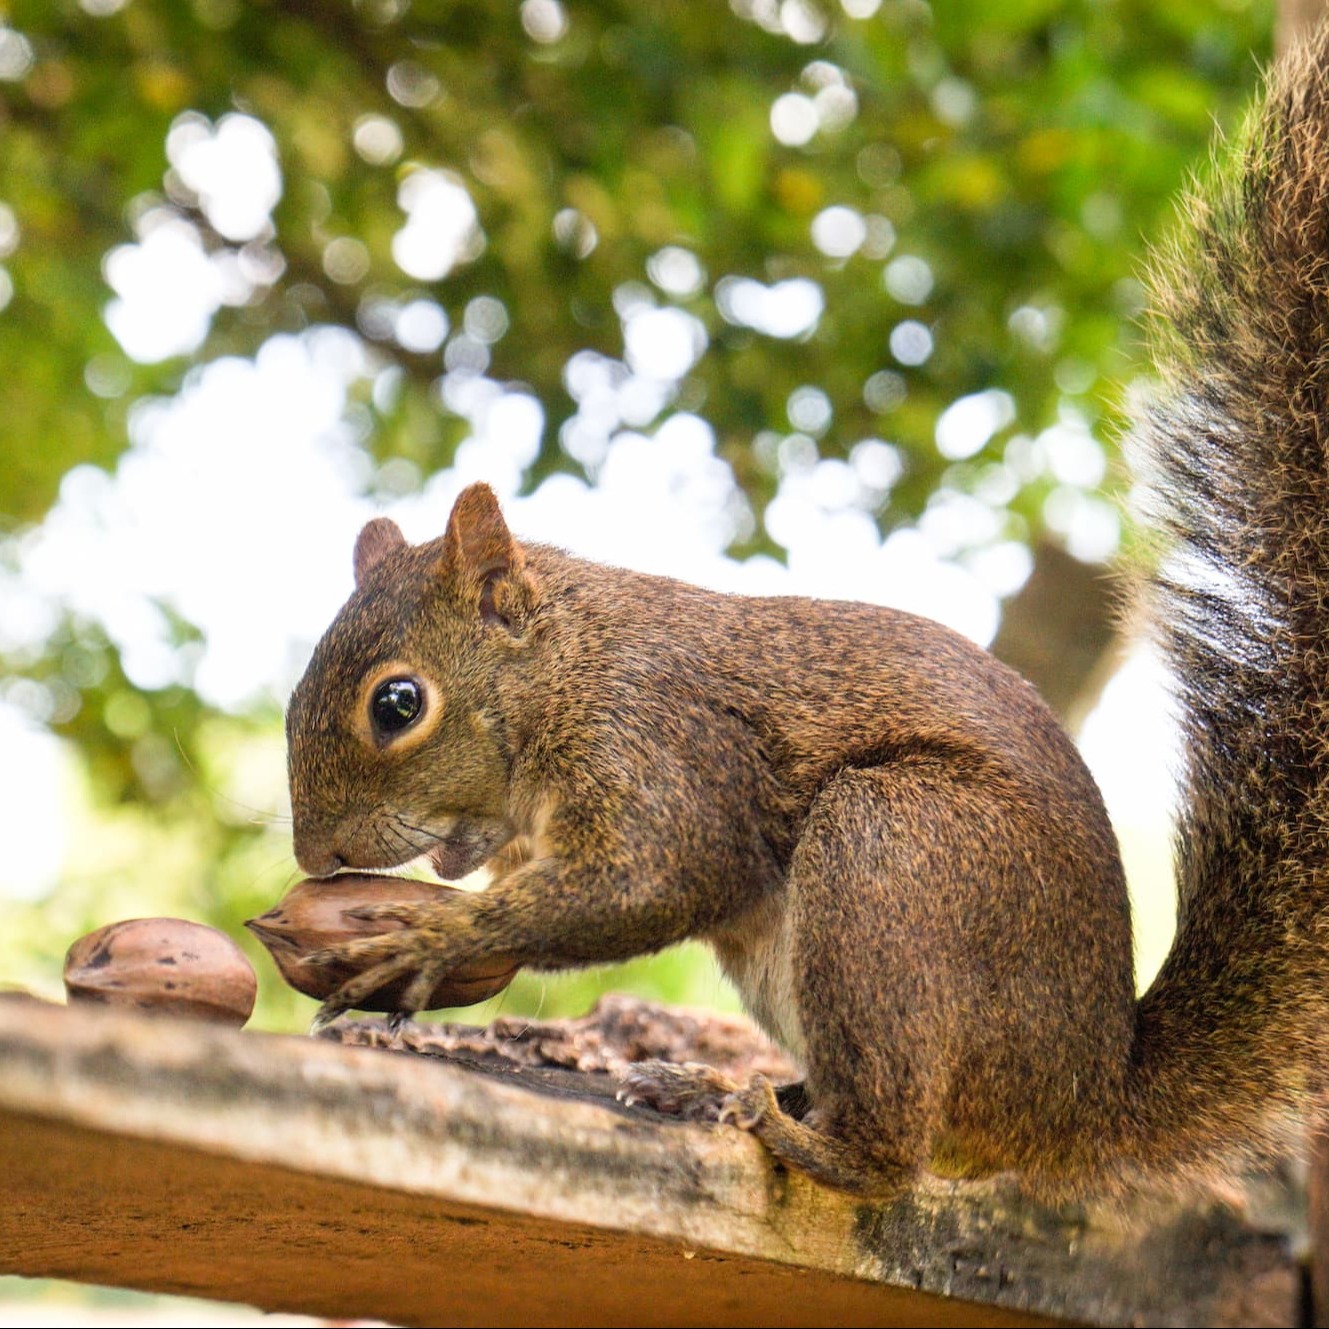 Conseils pour accueillir des écureuils dans son jardin - Aveve